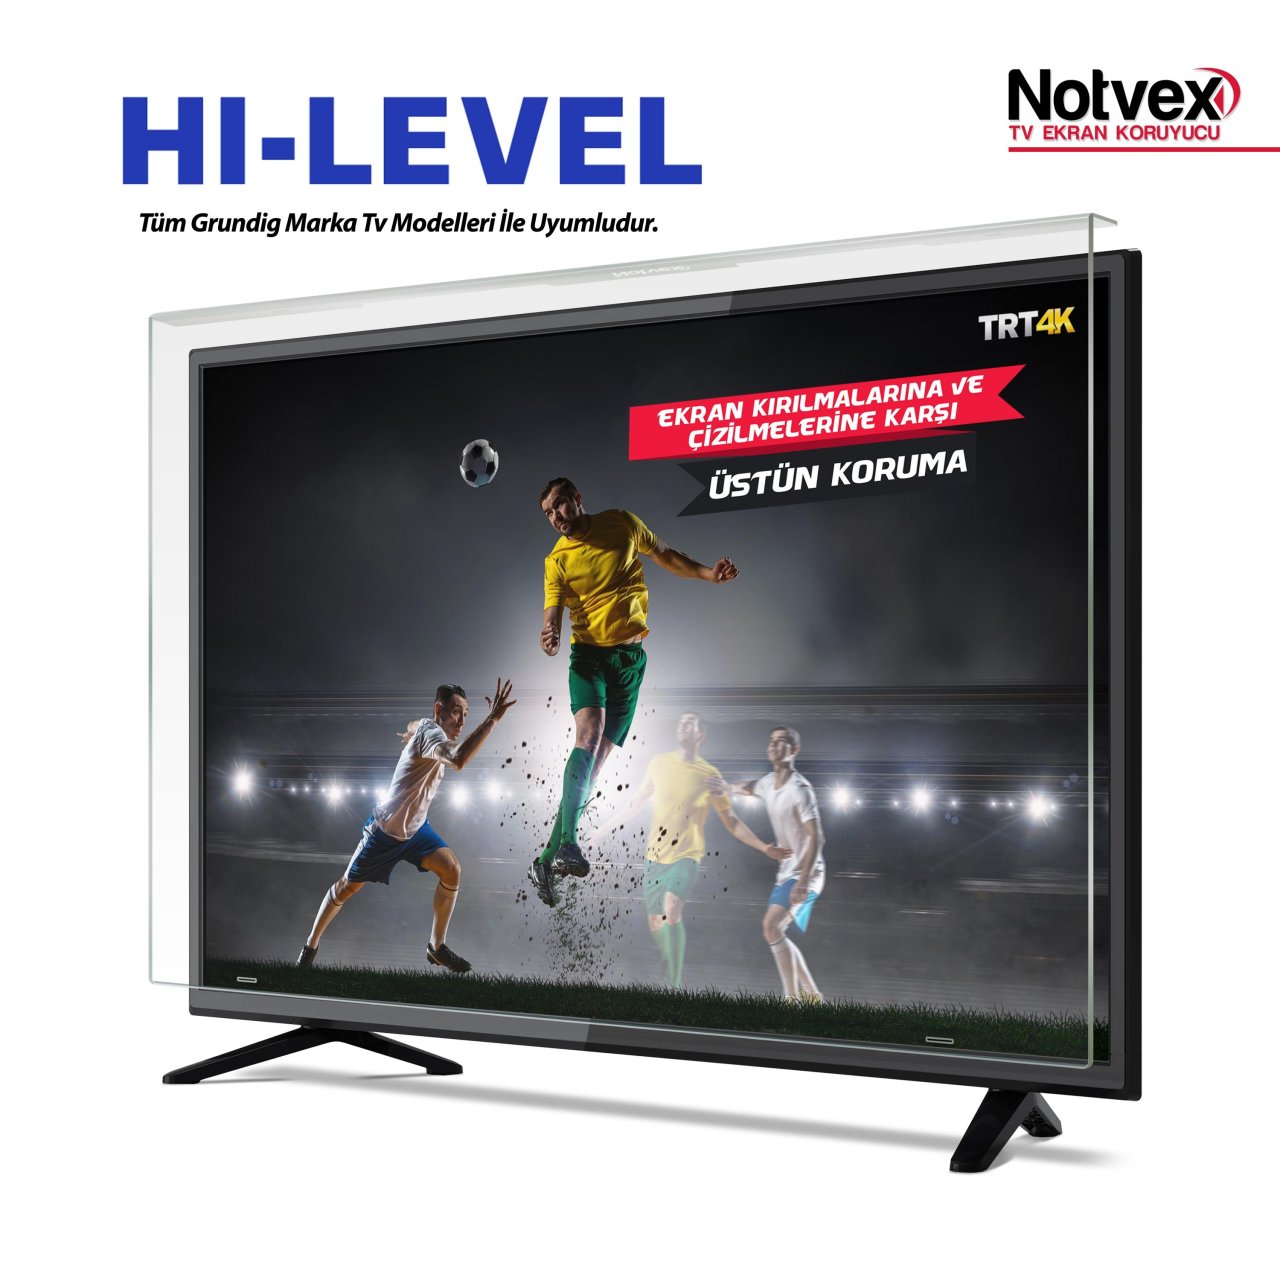 Hi-Level 48HL550 Uyumlu TV Ekran Koruyucu